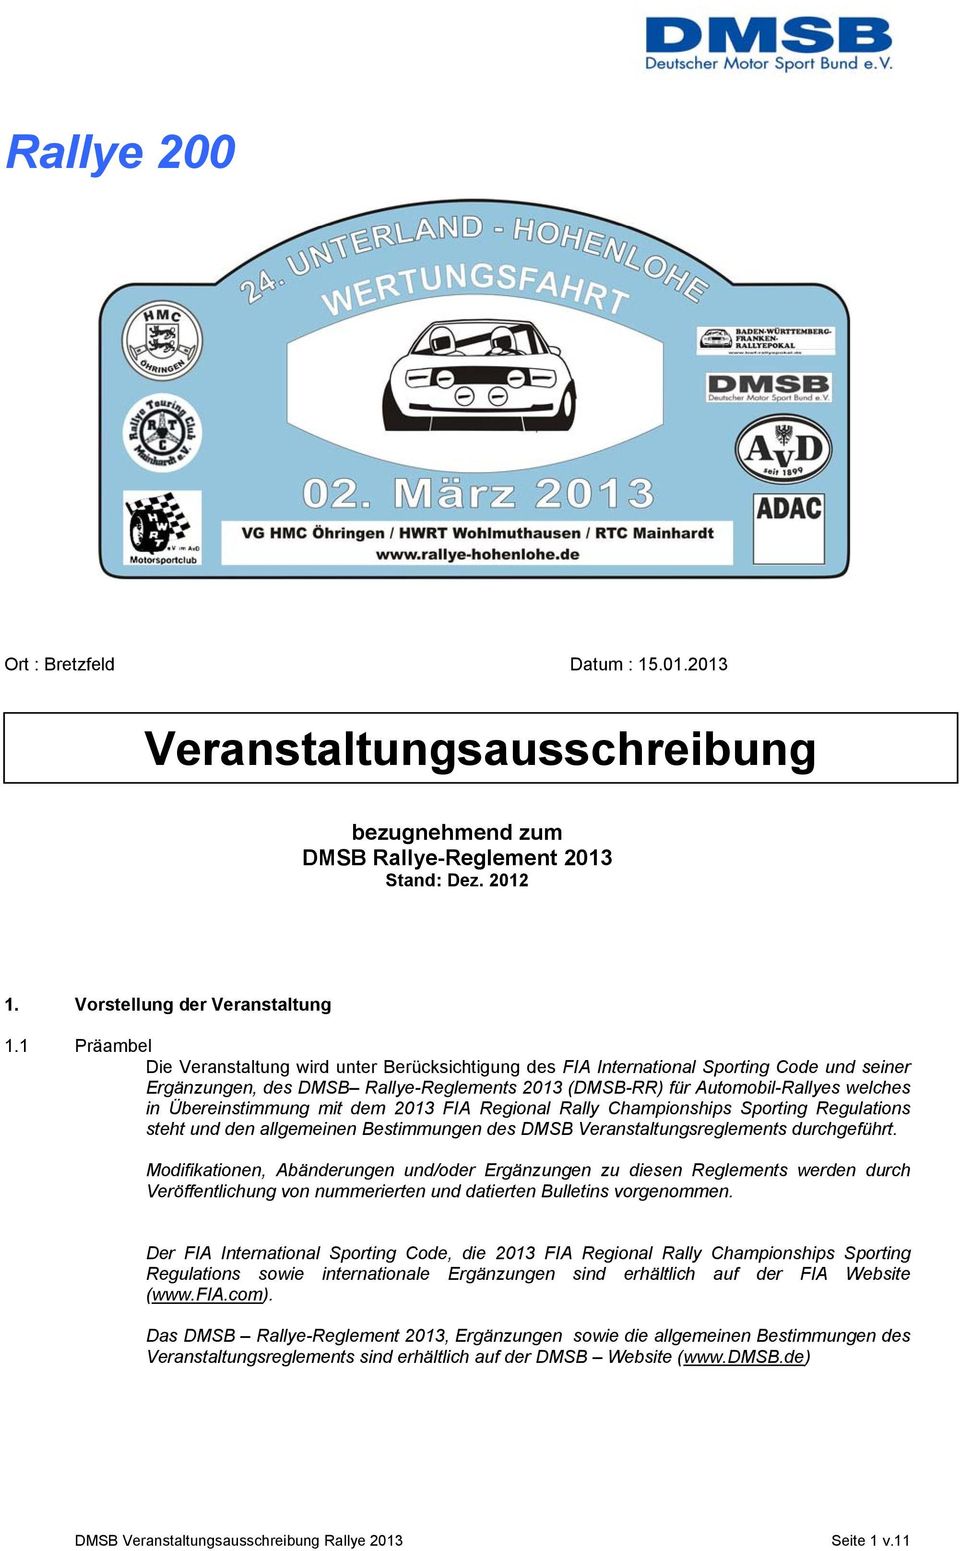 Übereinstimmung mit dem 2013 FIA Regional Rally Championships Sporting Regulations steht und den allgemeinen Bestimmungen des DMSB Veranstaltungsreglements durchgeführt.